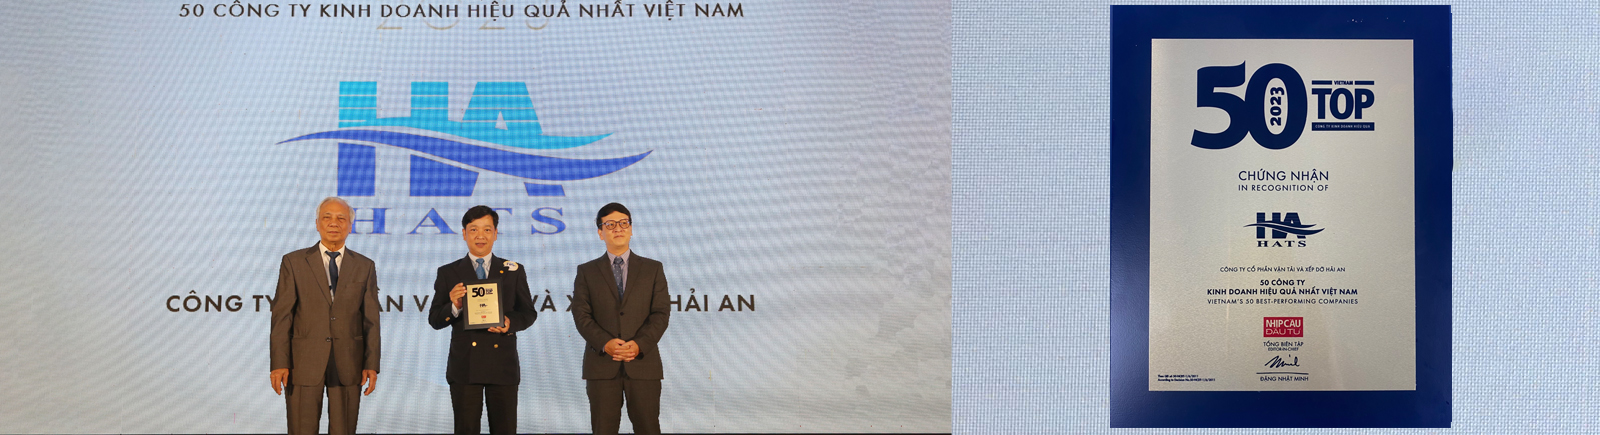 Top50 Công ty kinh doanh hiệu quả nhất Việt Nam 2023